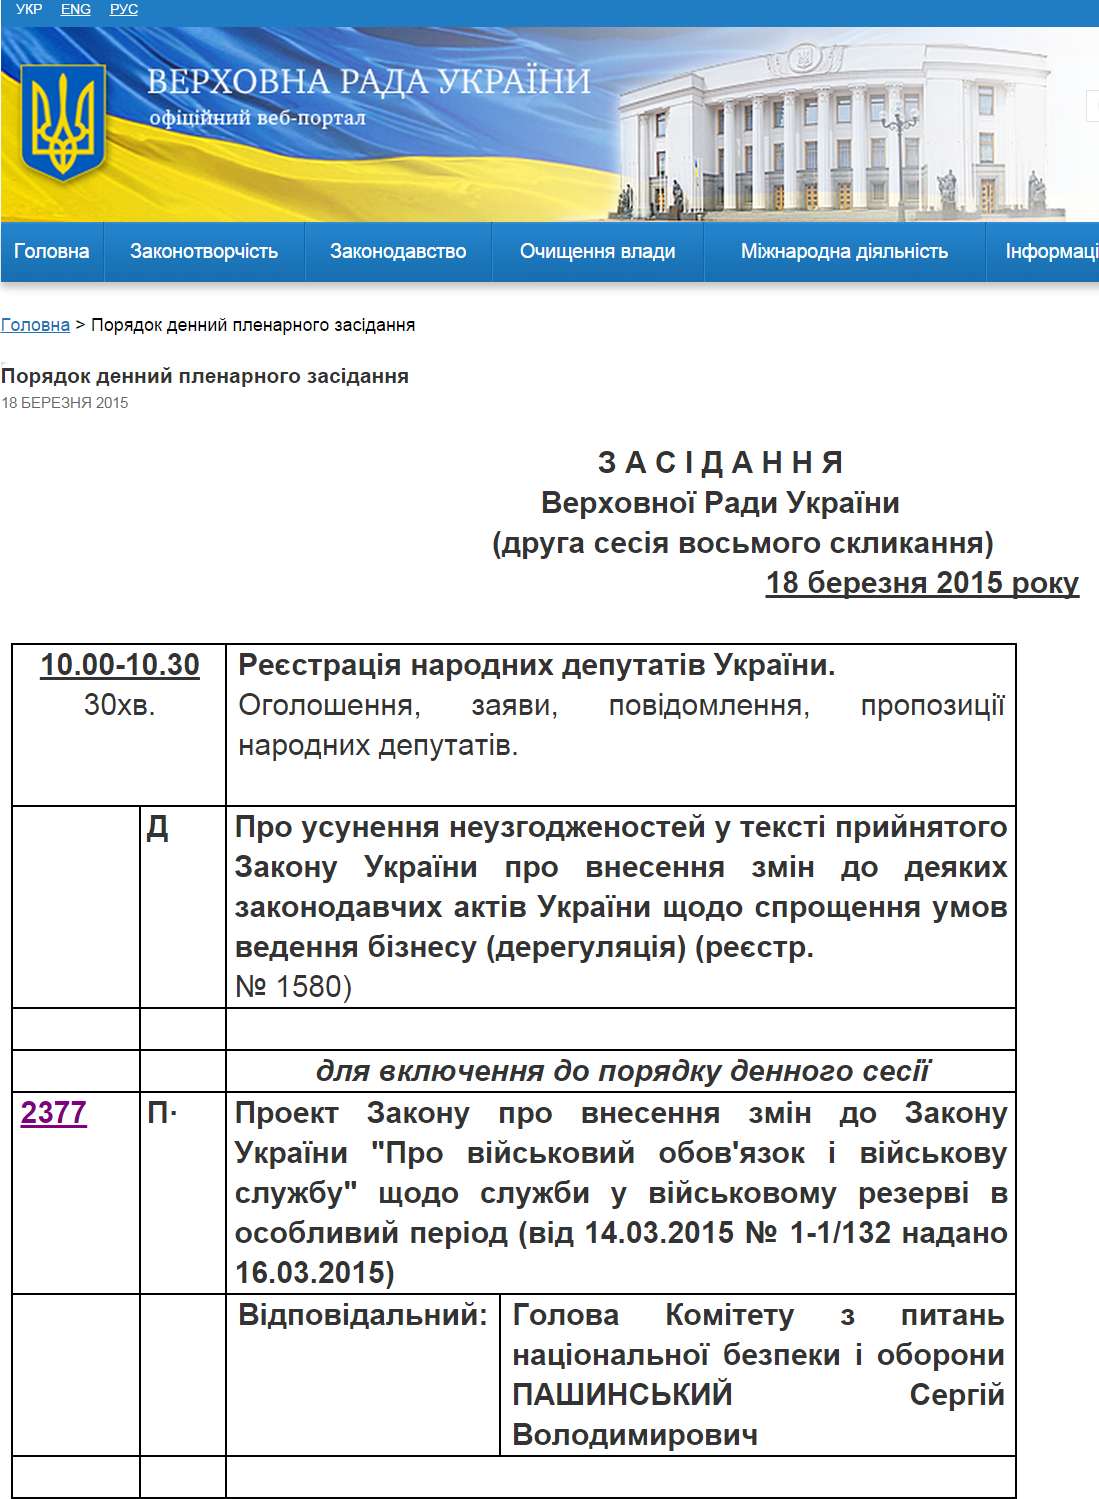 http://iportal.rada.gov.ua/meeting/awt/show/5821.html